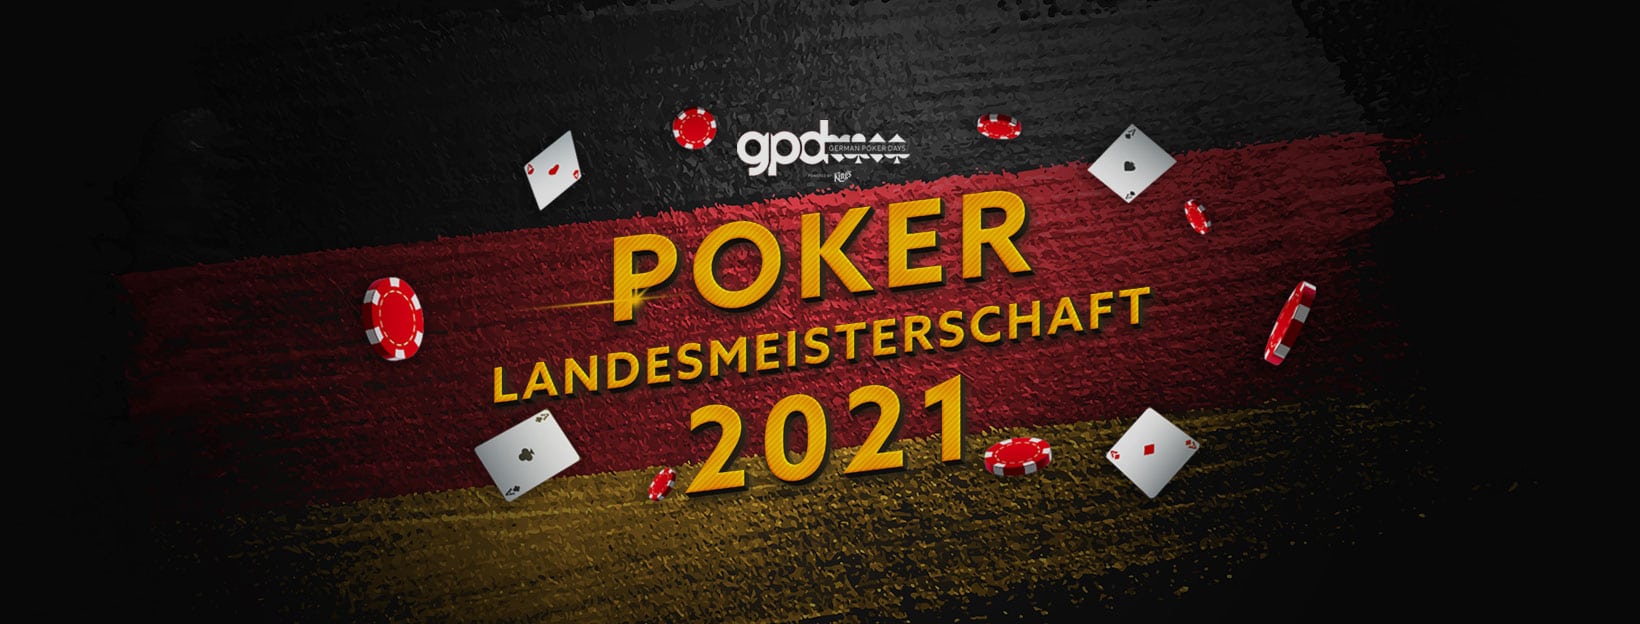 Poker Landesmeisterschaft 2021 Bremen